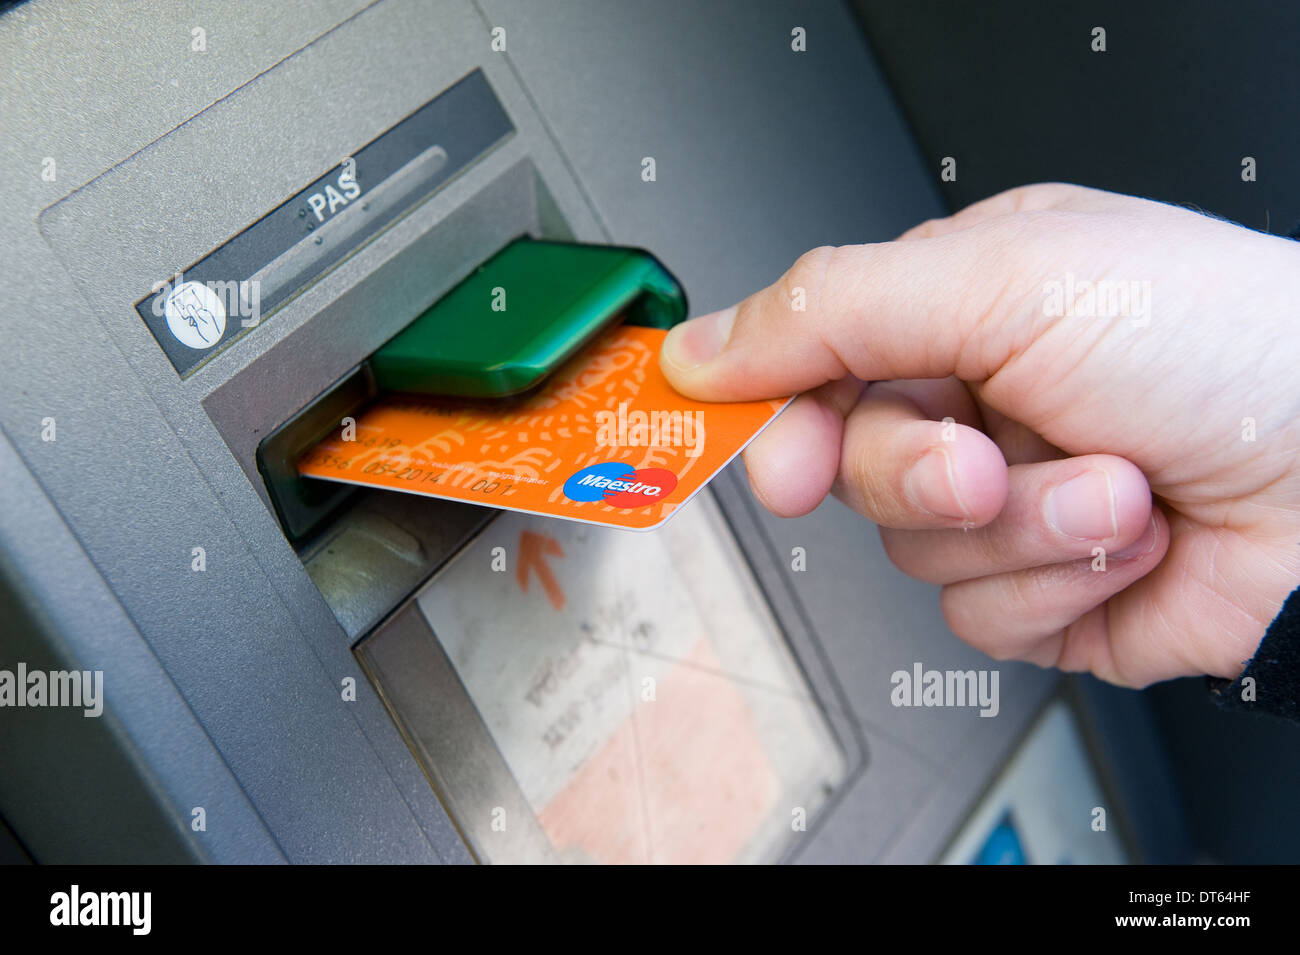 Une femme met sa carte bancaire dans un distributeur automatique pour retirer de l'argent argent Banque D'Images